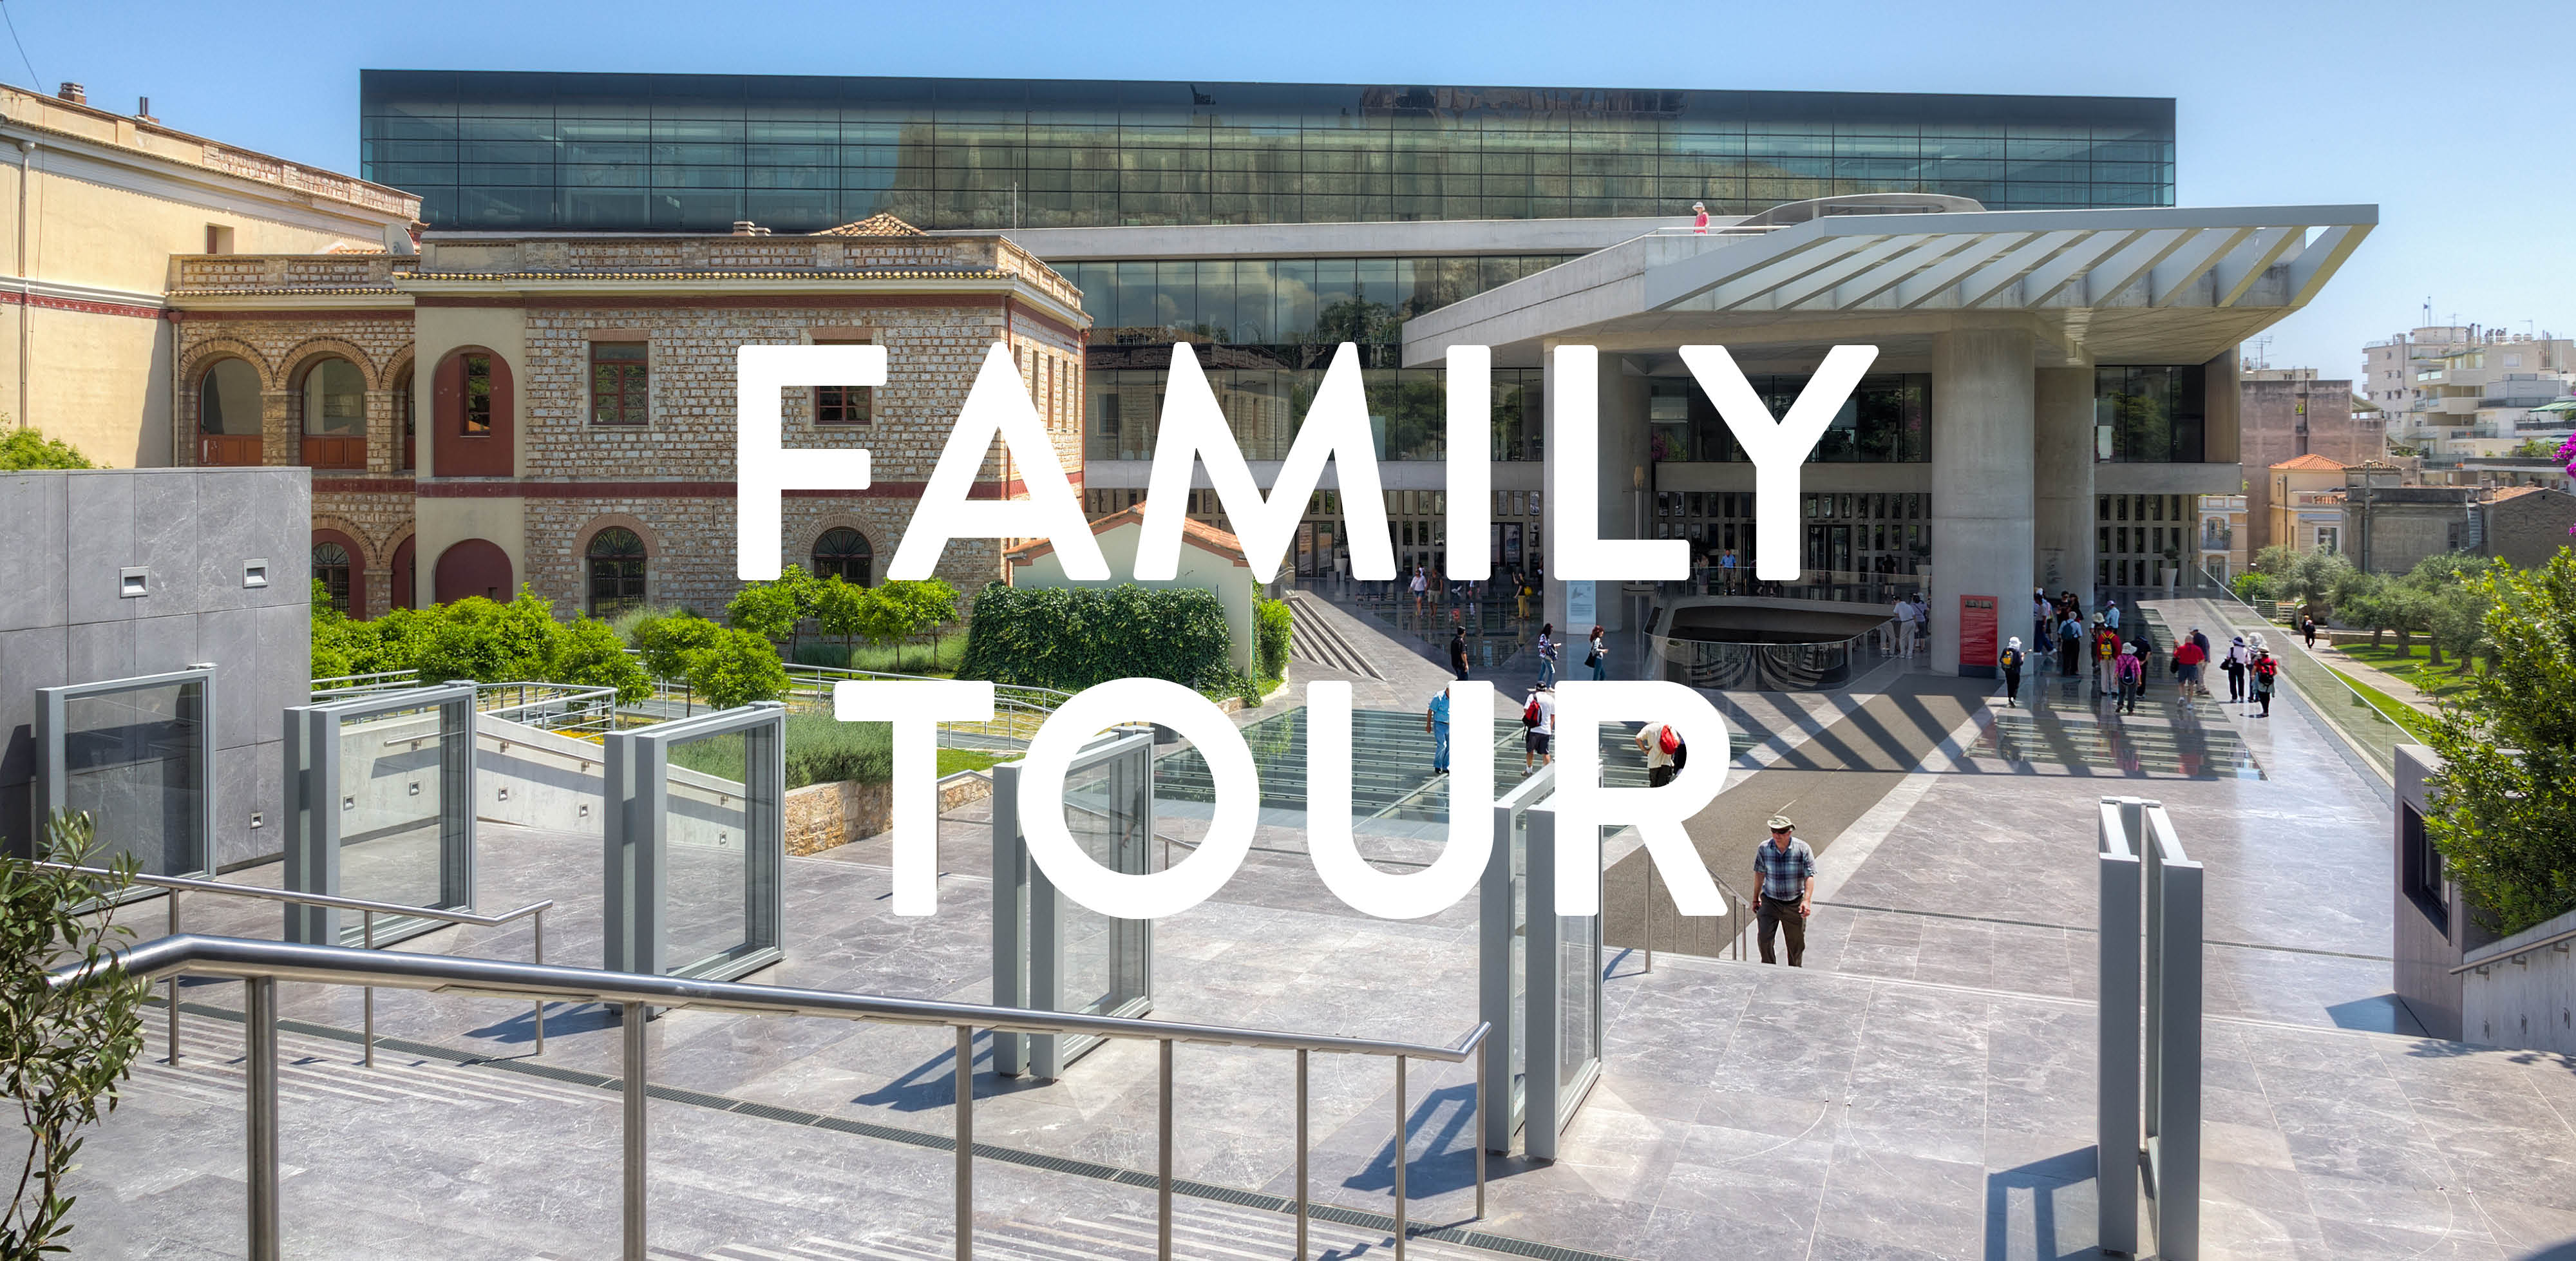 Family Acropolis Museum Tour